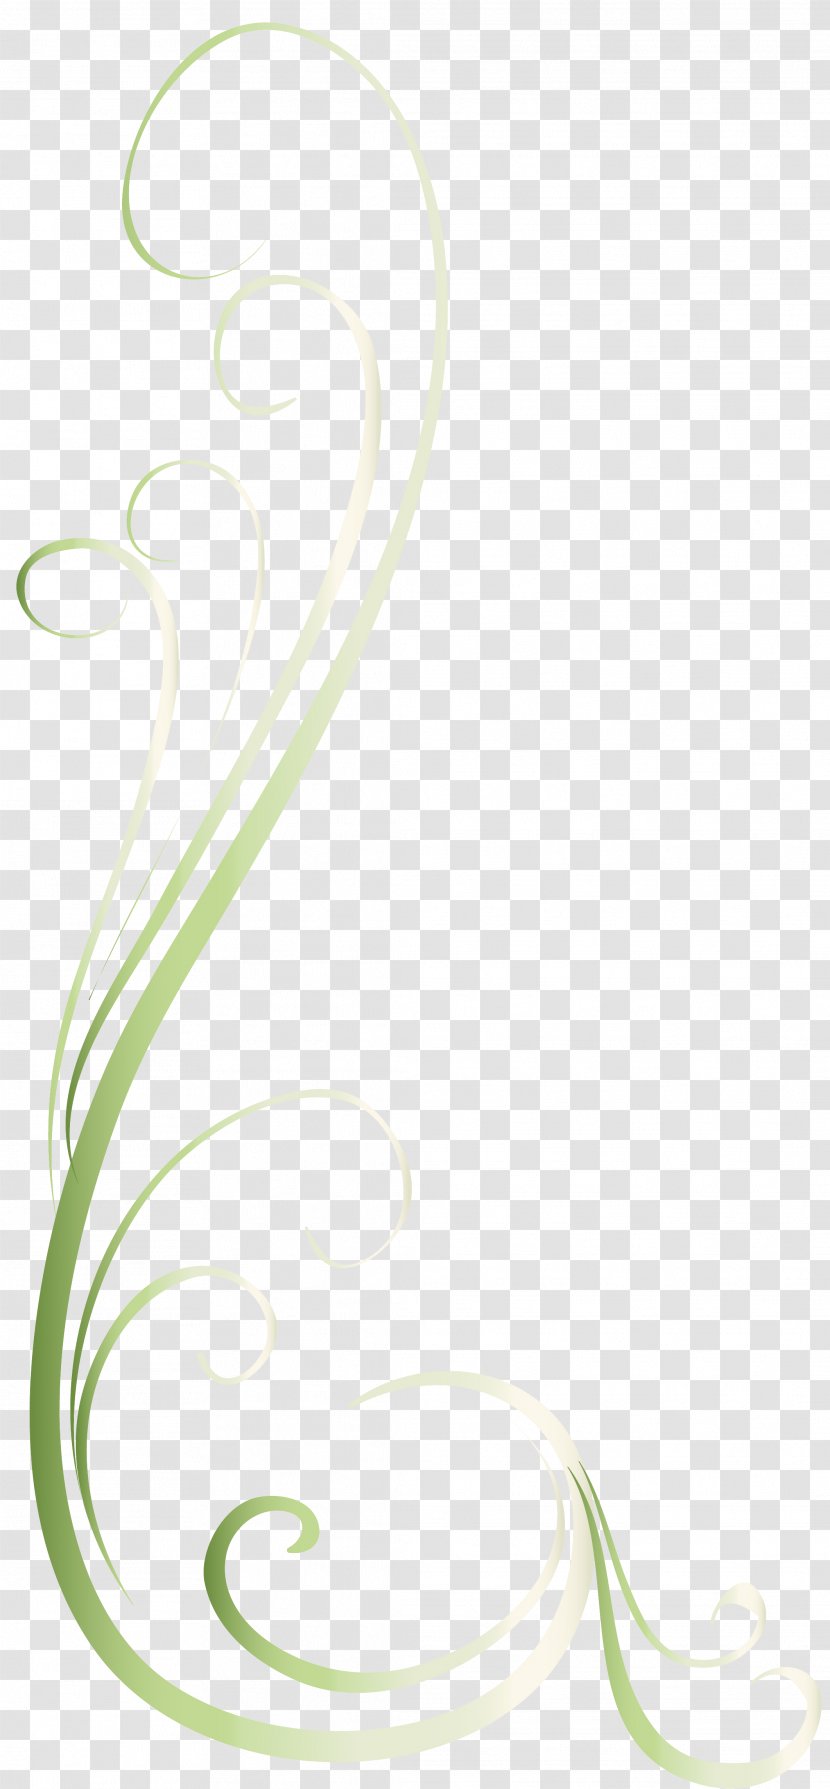 Green Font - Leaf - Floralelement Transparent PNG